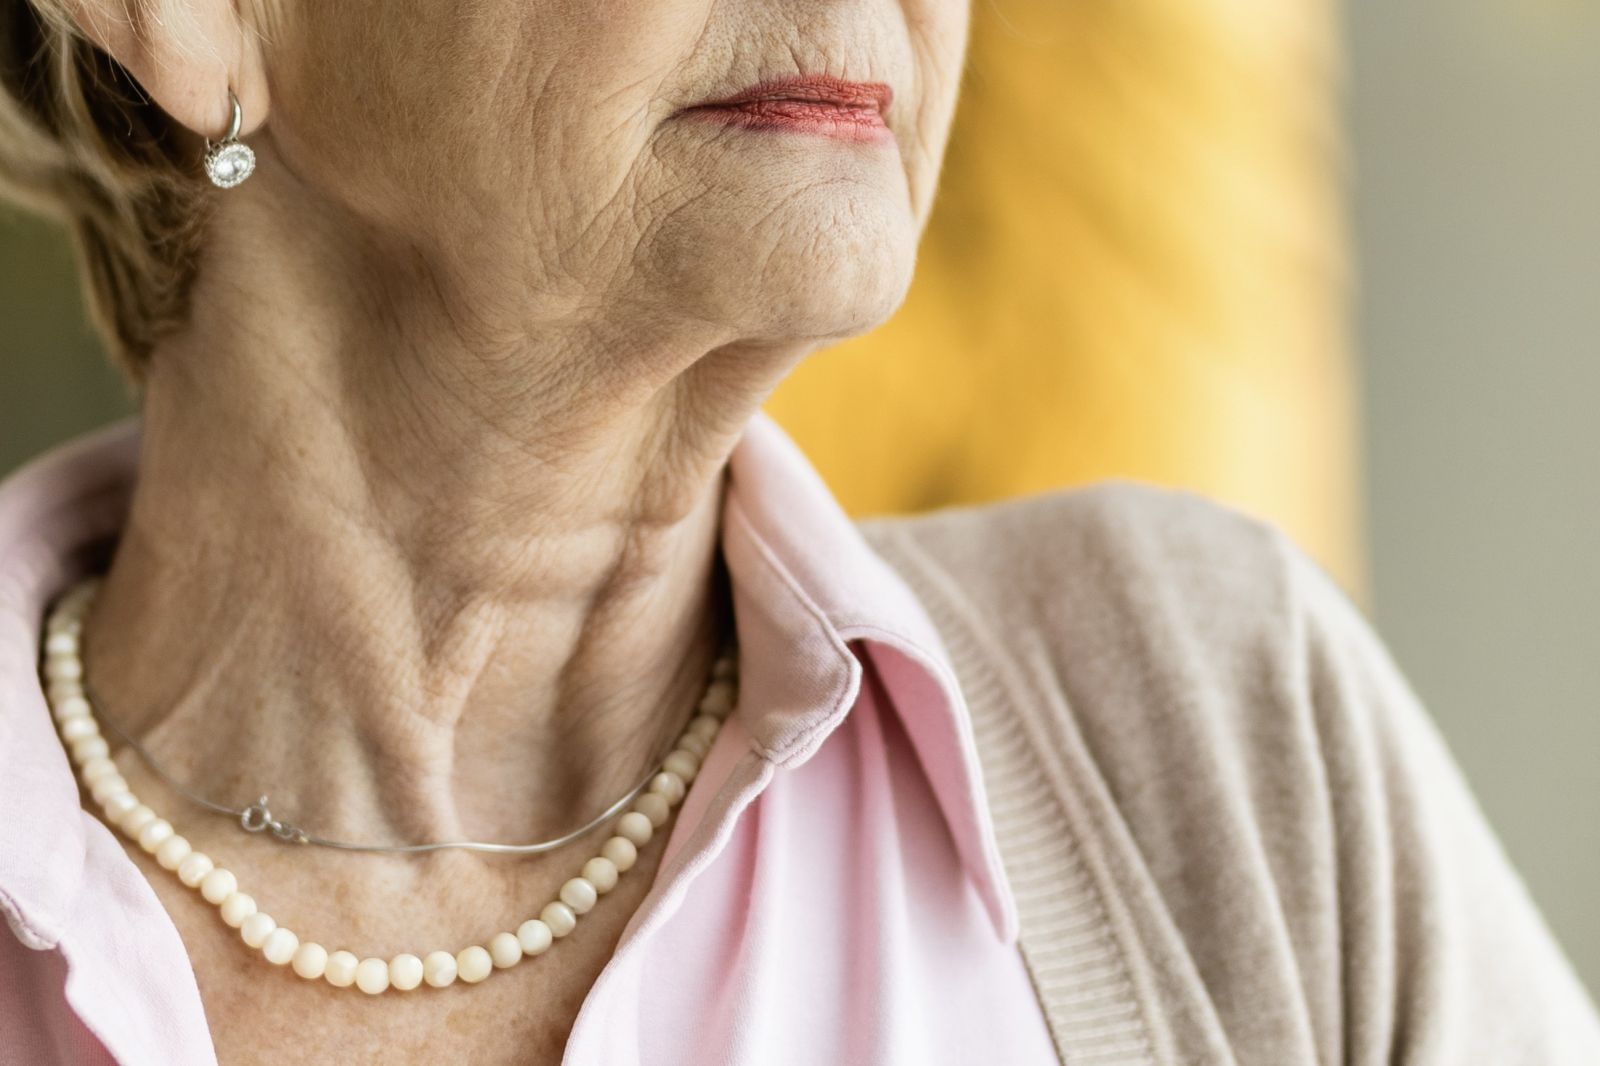 隨著皮膚的老化流失會造成頸部皮膚逐漸出現一些鬆弛、彈性變差的狀況